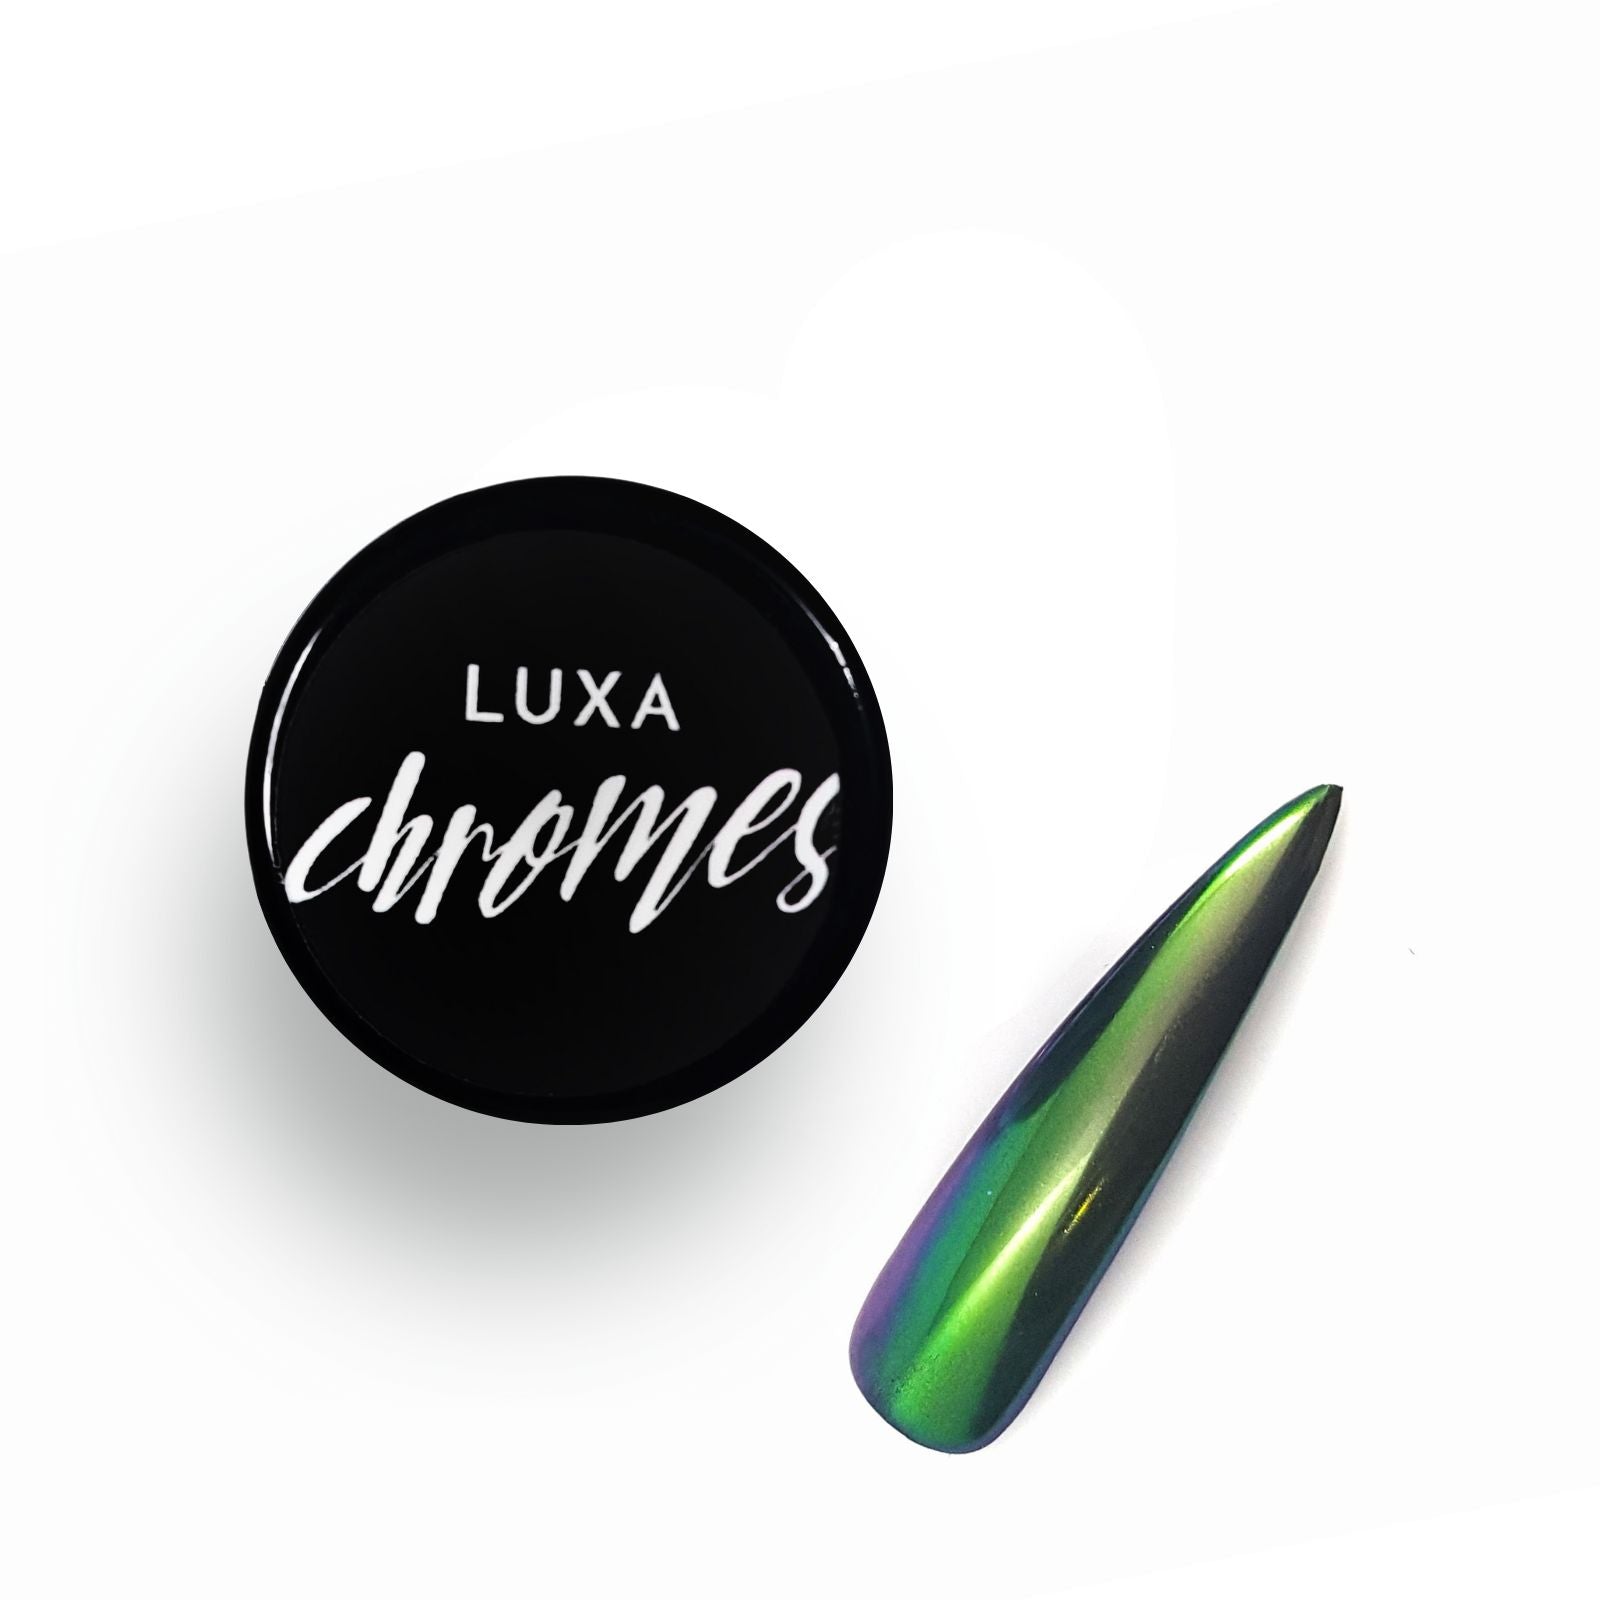 Luxapolish Oil Slick Chrome - Aurora Borealis